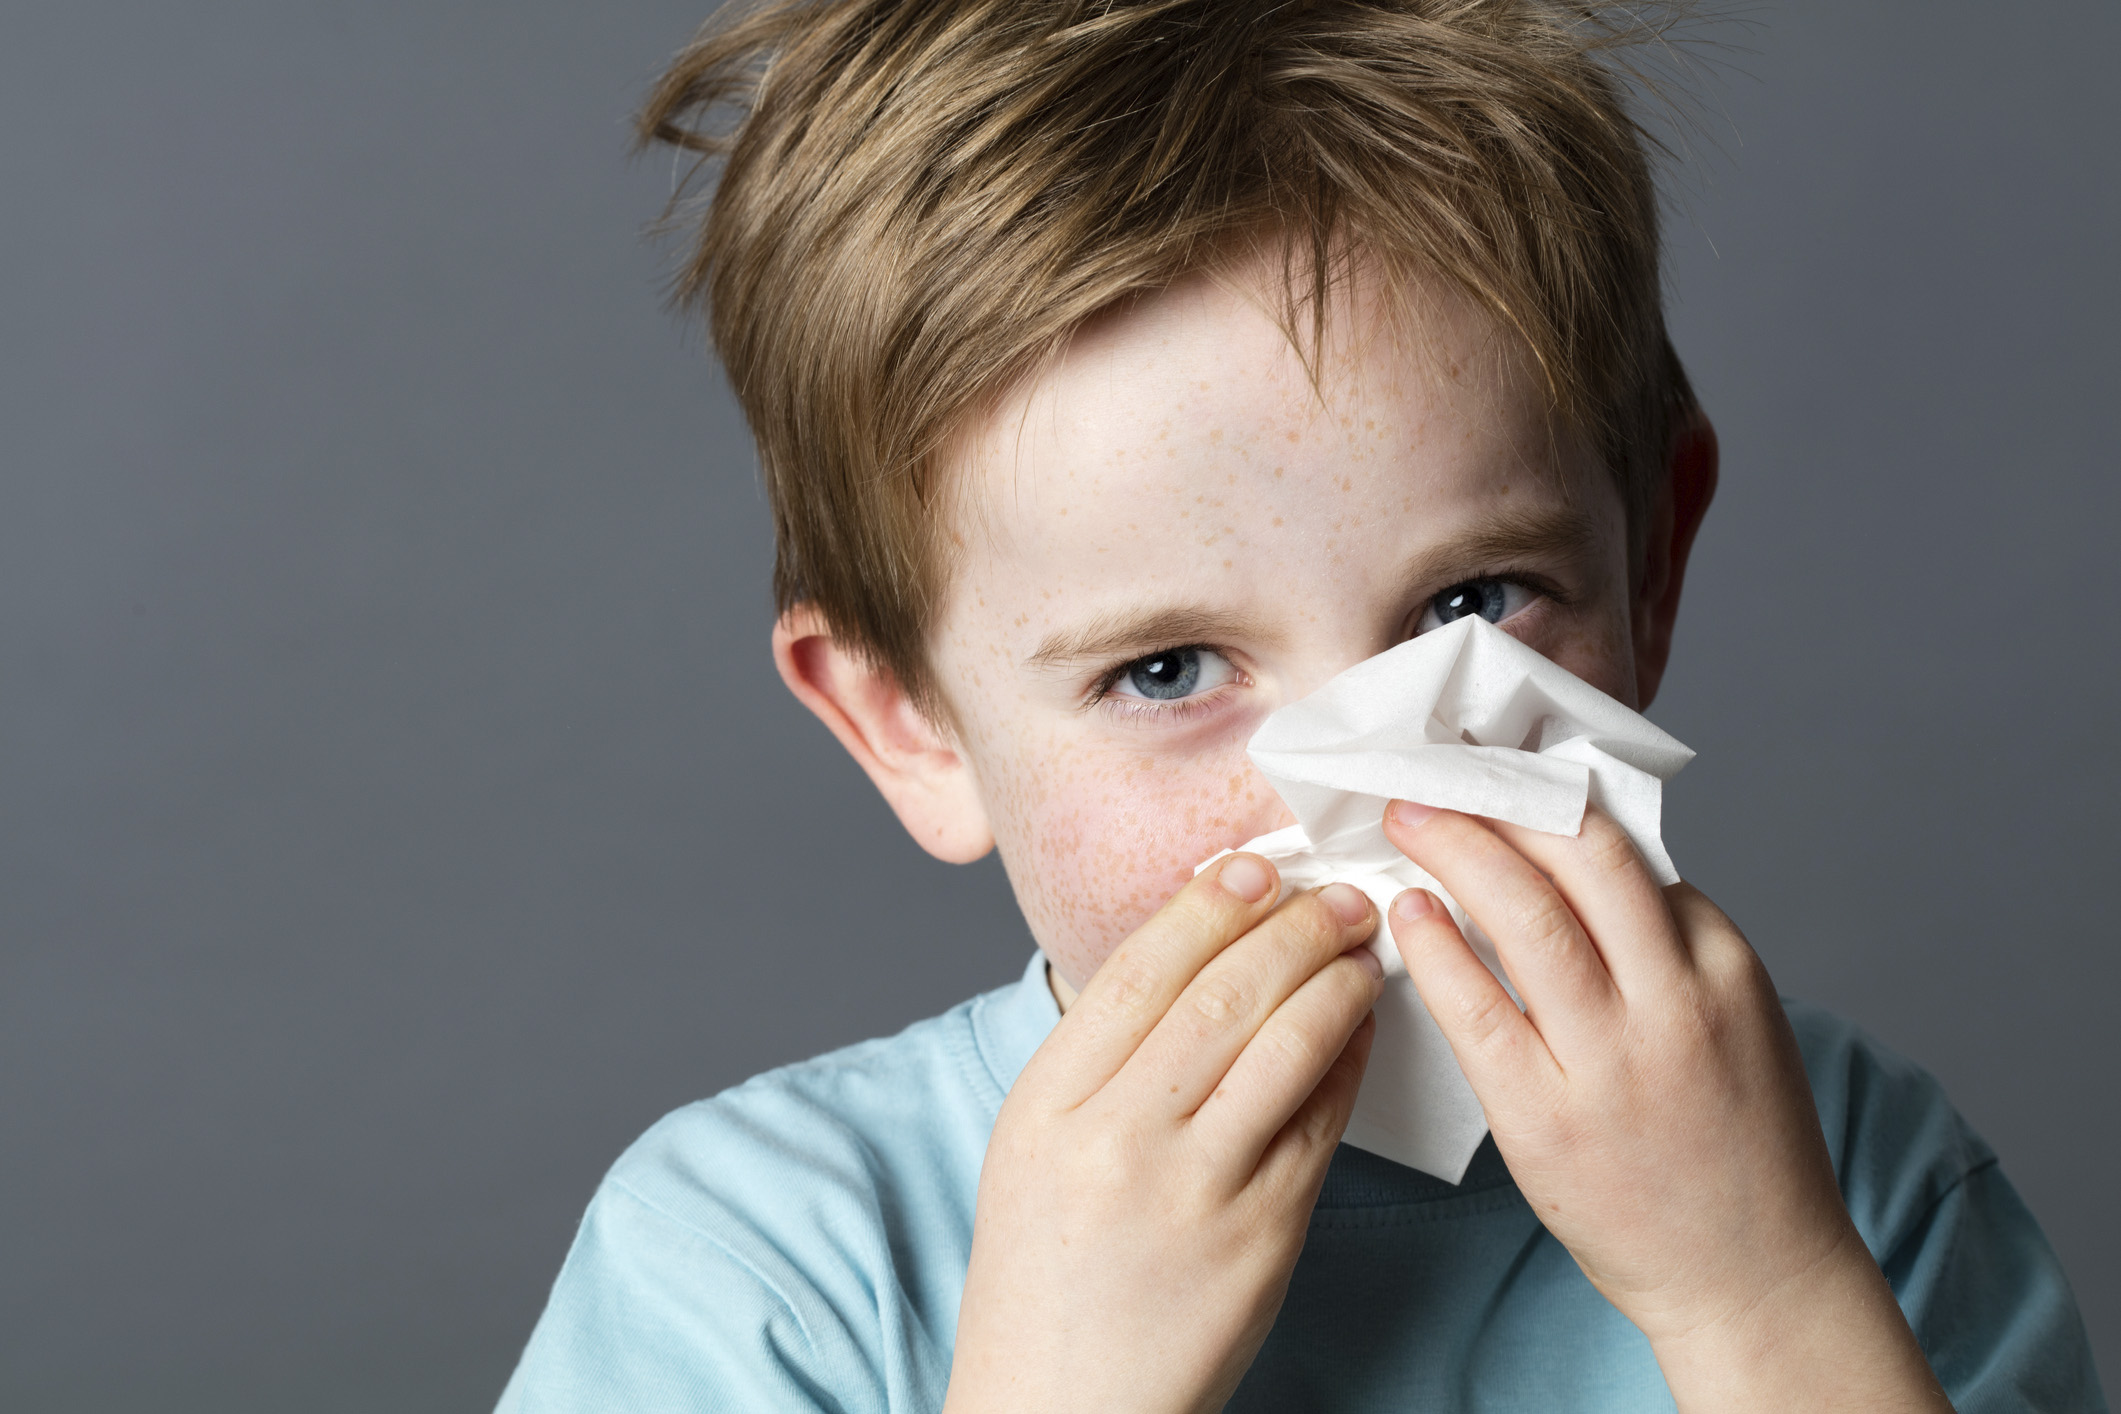 Prehlada i gripa učestale su u zimskom dijelu godine